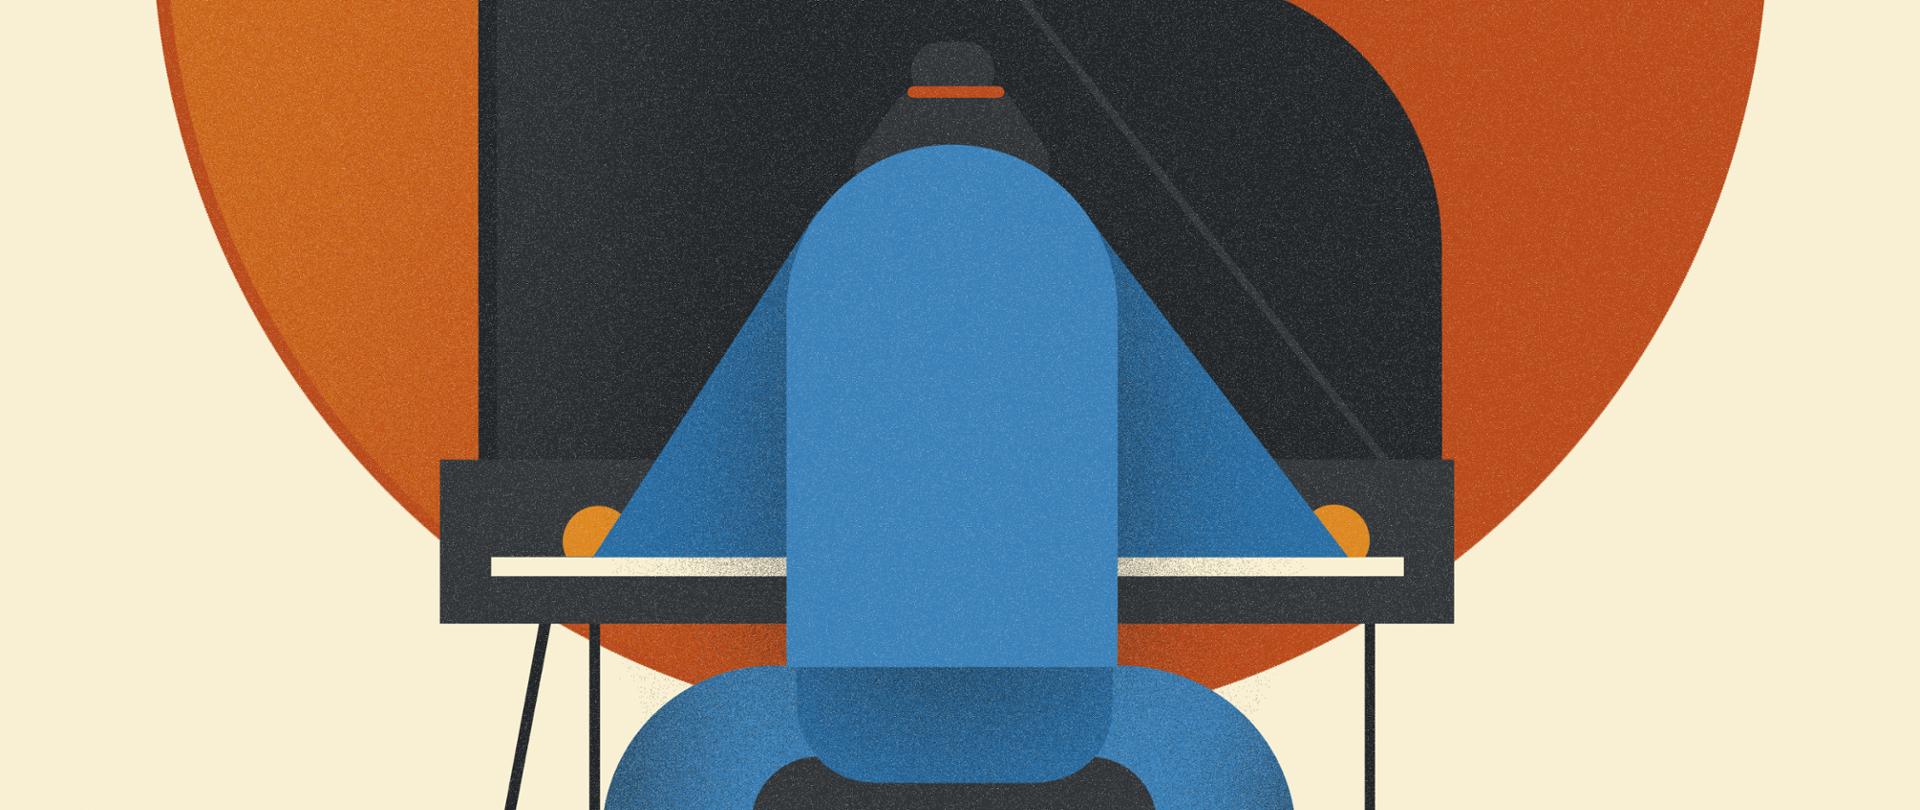 Rysunkowa postać ubrana na niebiesko siedząca przy fortepianie tyłem do widza na tle pomarańczowego koła.